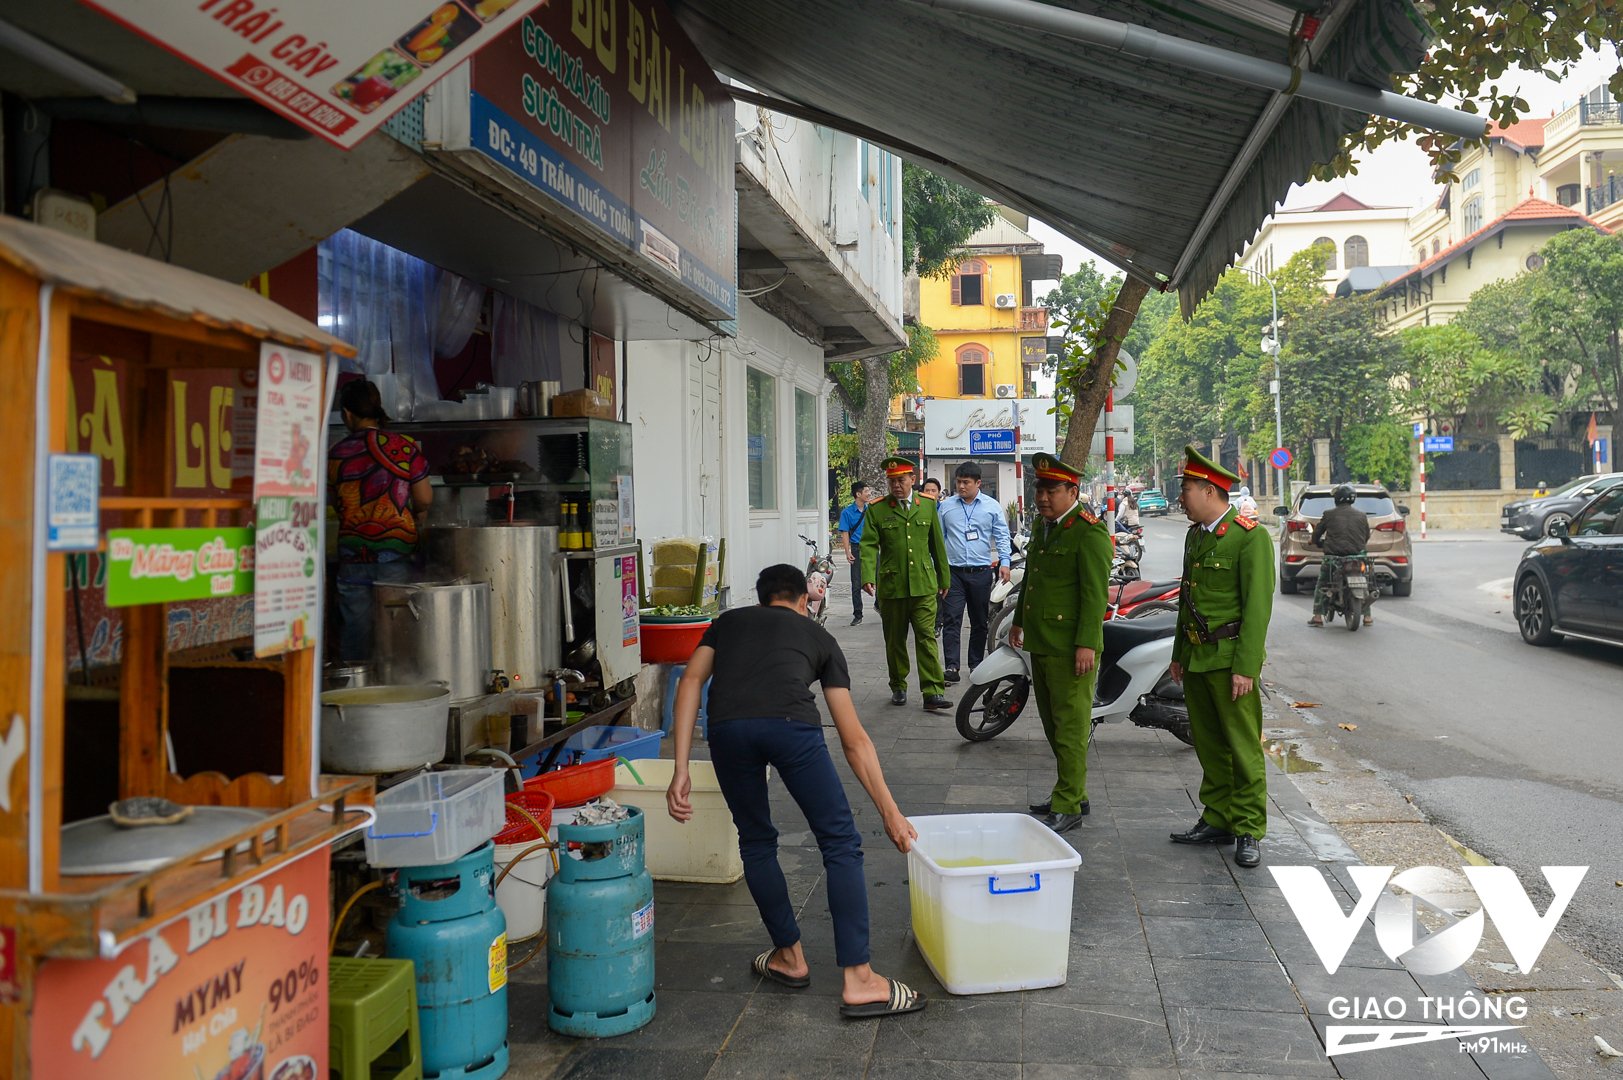 Lực lượng chức năng yêu cầu cửa hàng kinh doanh đồ ăn tại số 49 Trần Quốc Toản thu dọn đồ đạc, bếp ga,... bầy biện ra vỉa hè để kinh doanh.